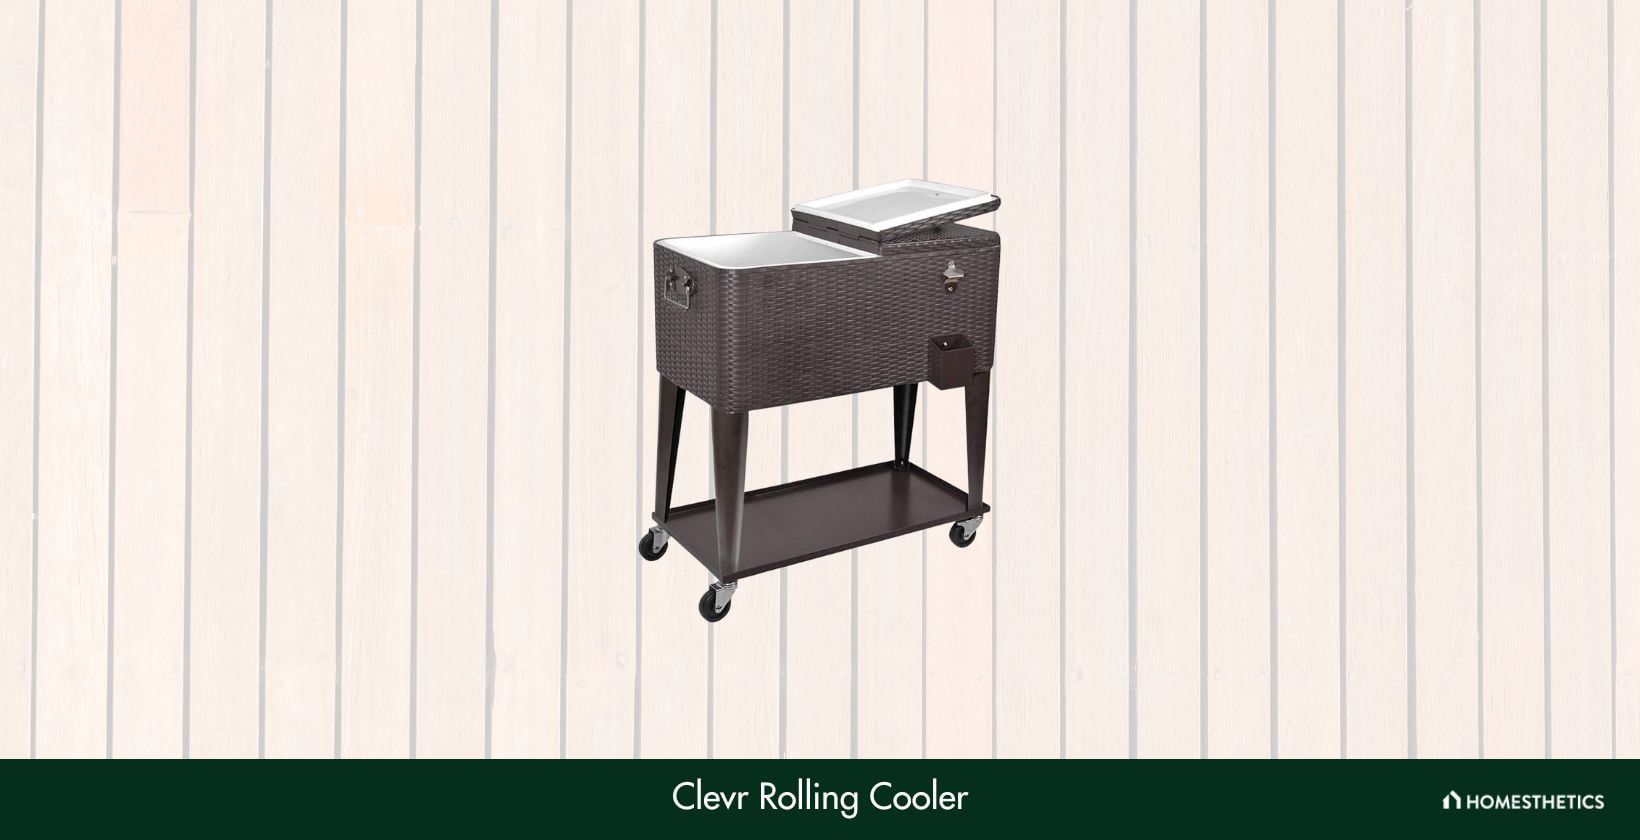 Clevr Rolling Cooler